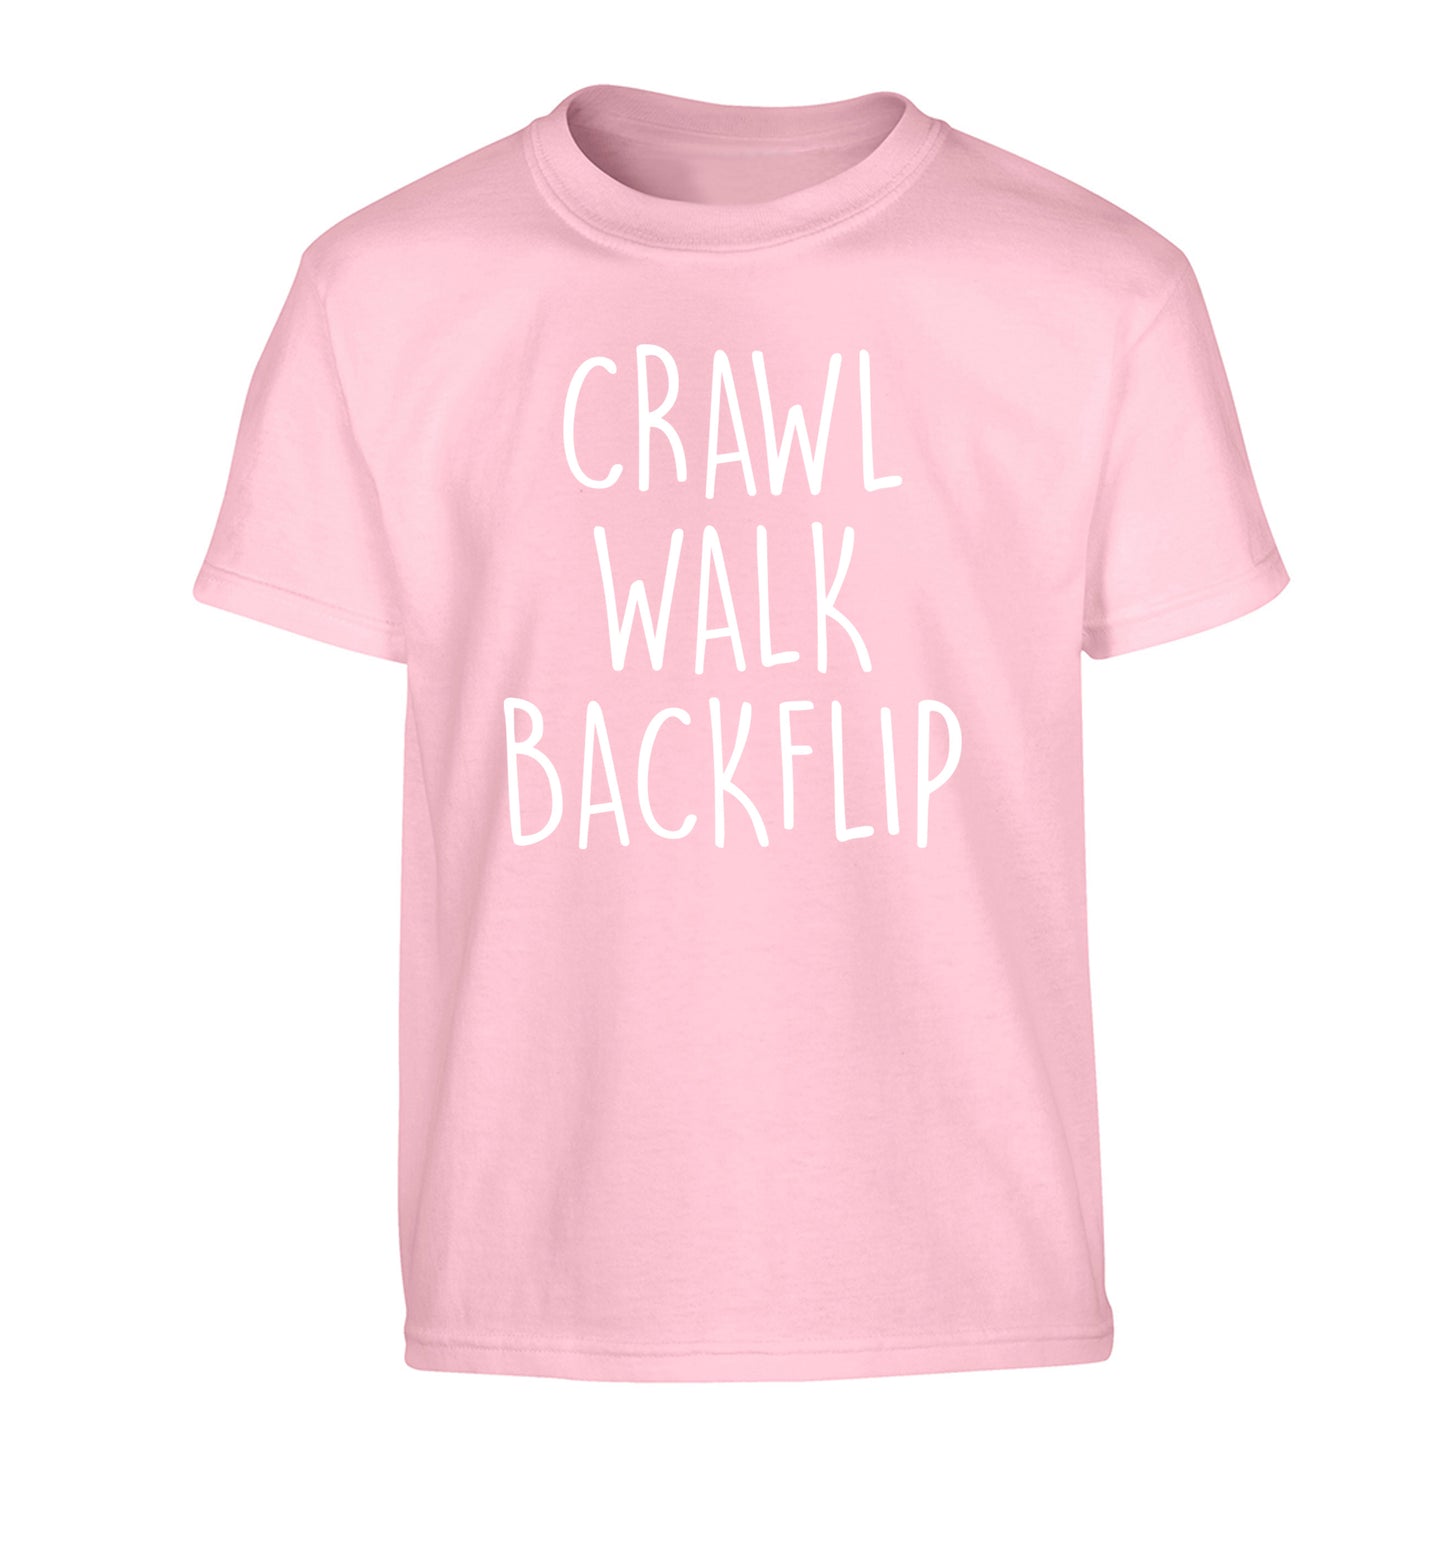 Crawl Walk Backflip Children's light pink Tshirt 12-13 Years